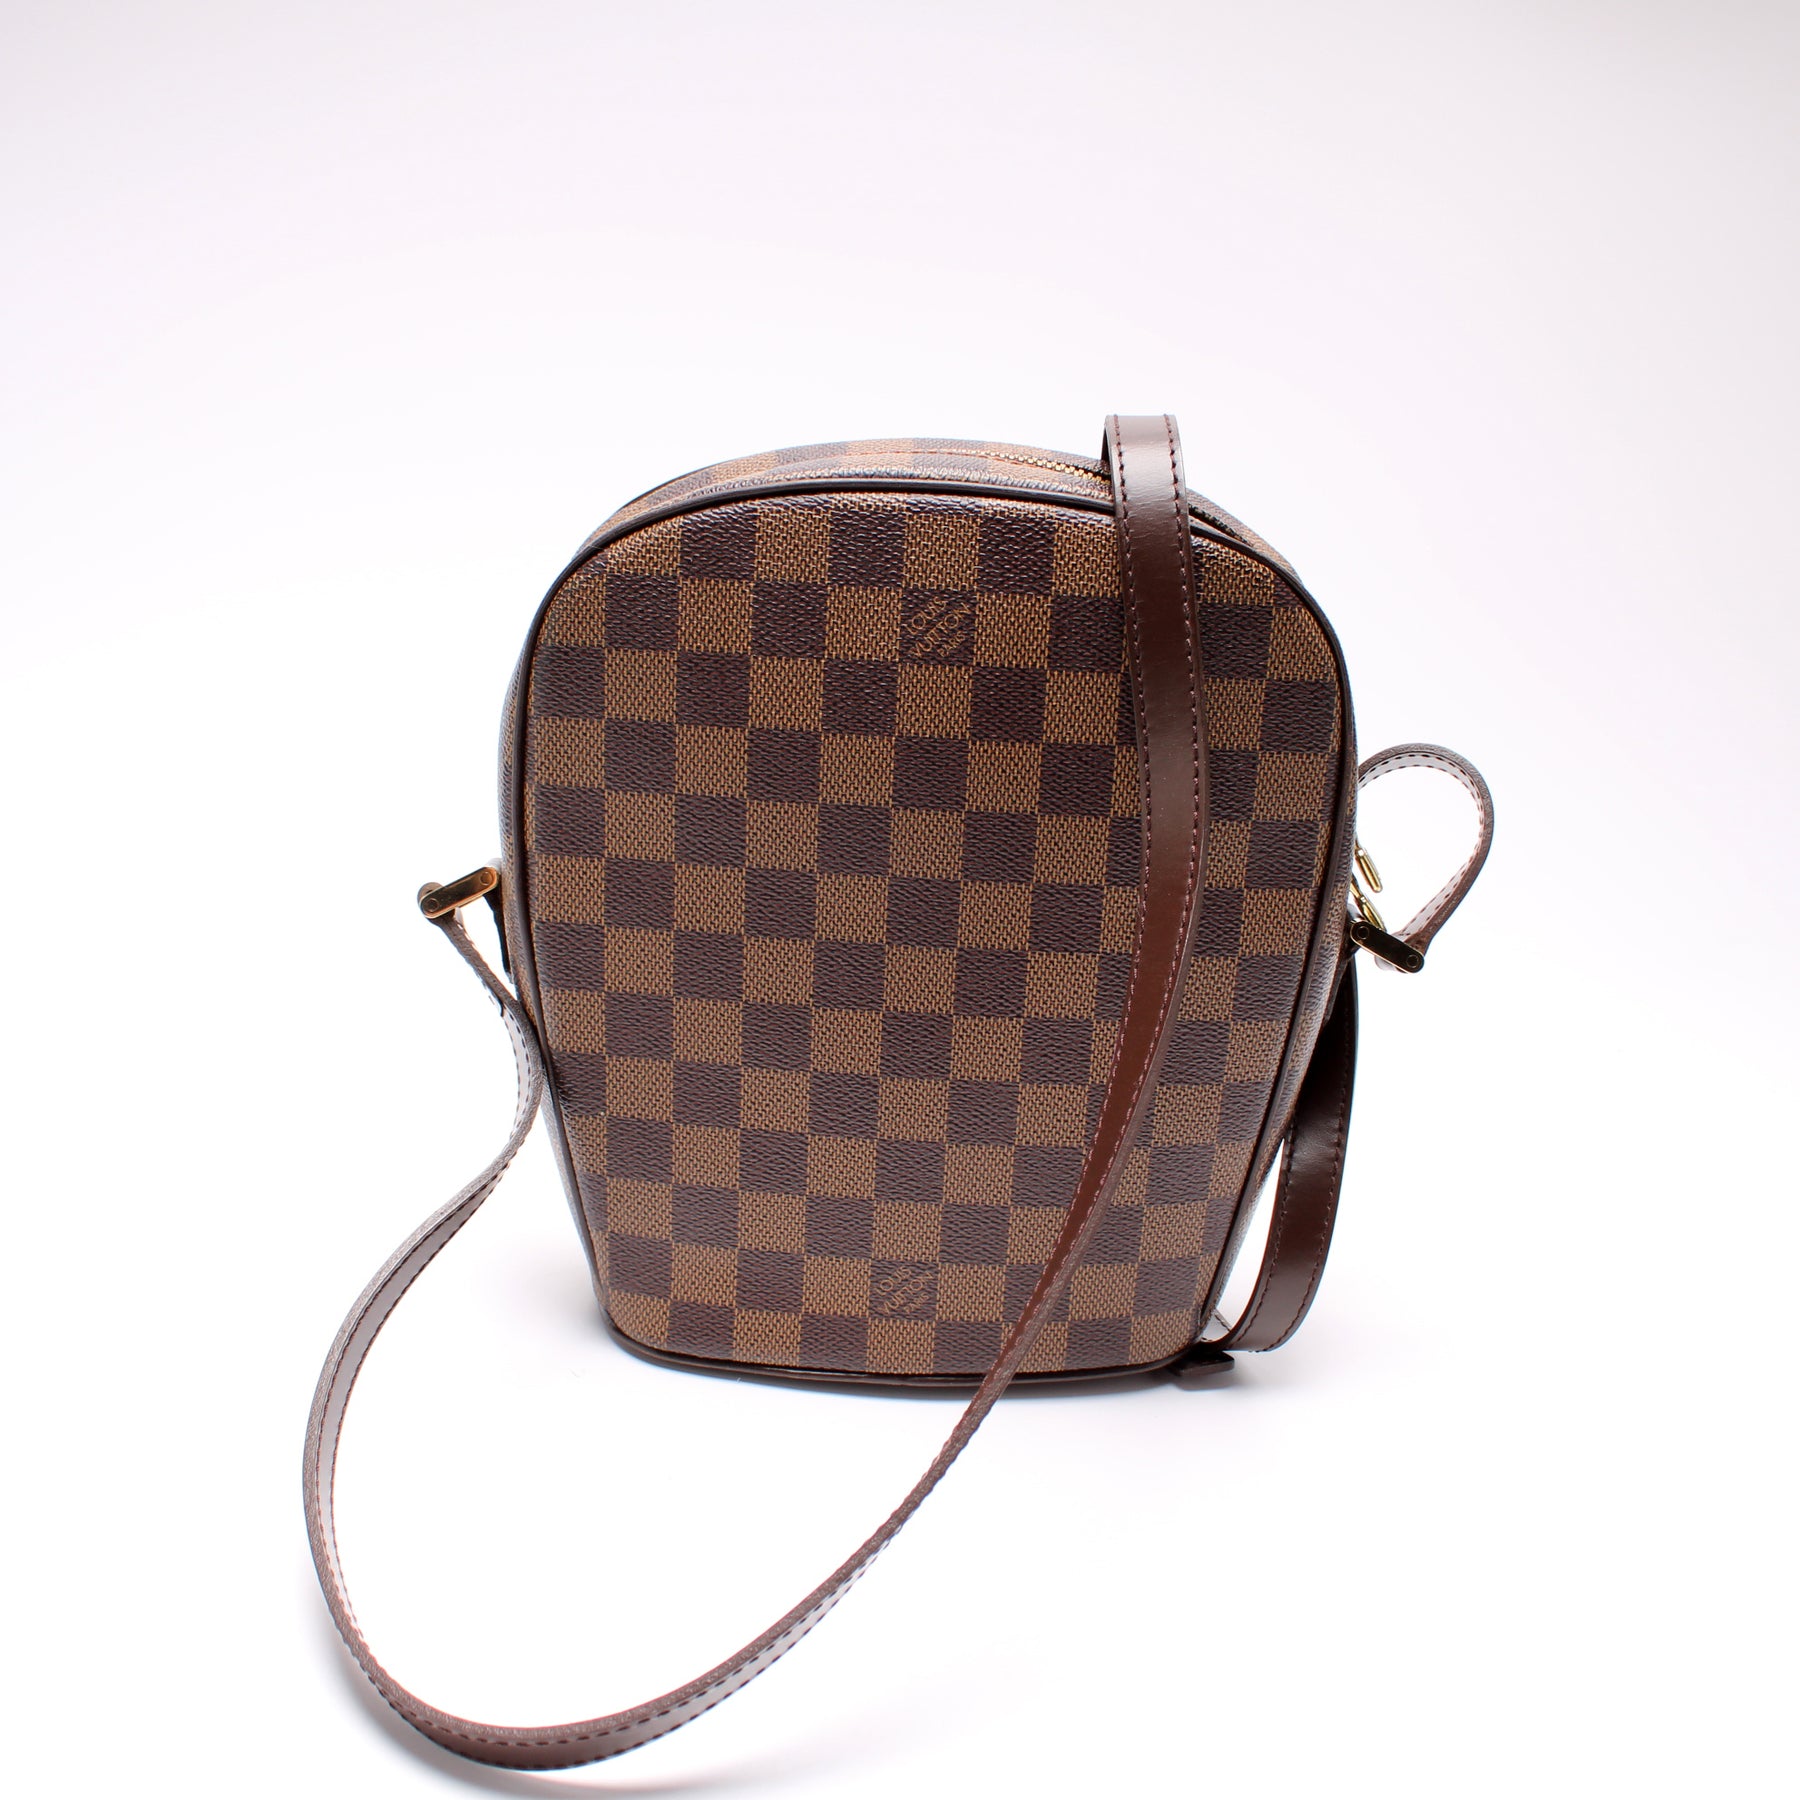 Louis Vuitton Ipanema Canvas Clutch Bag